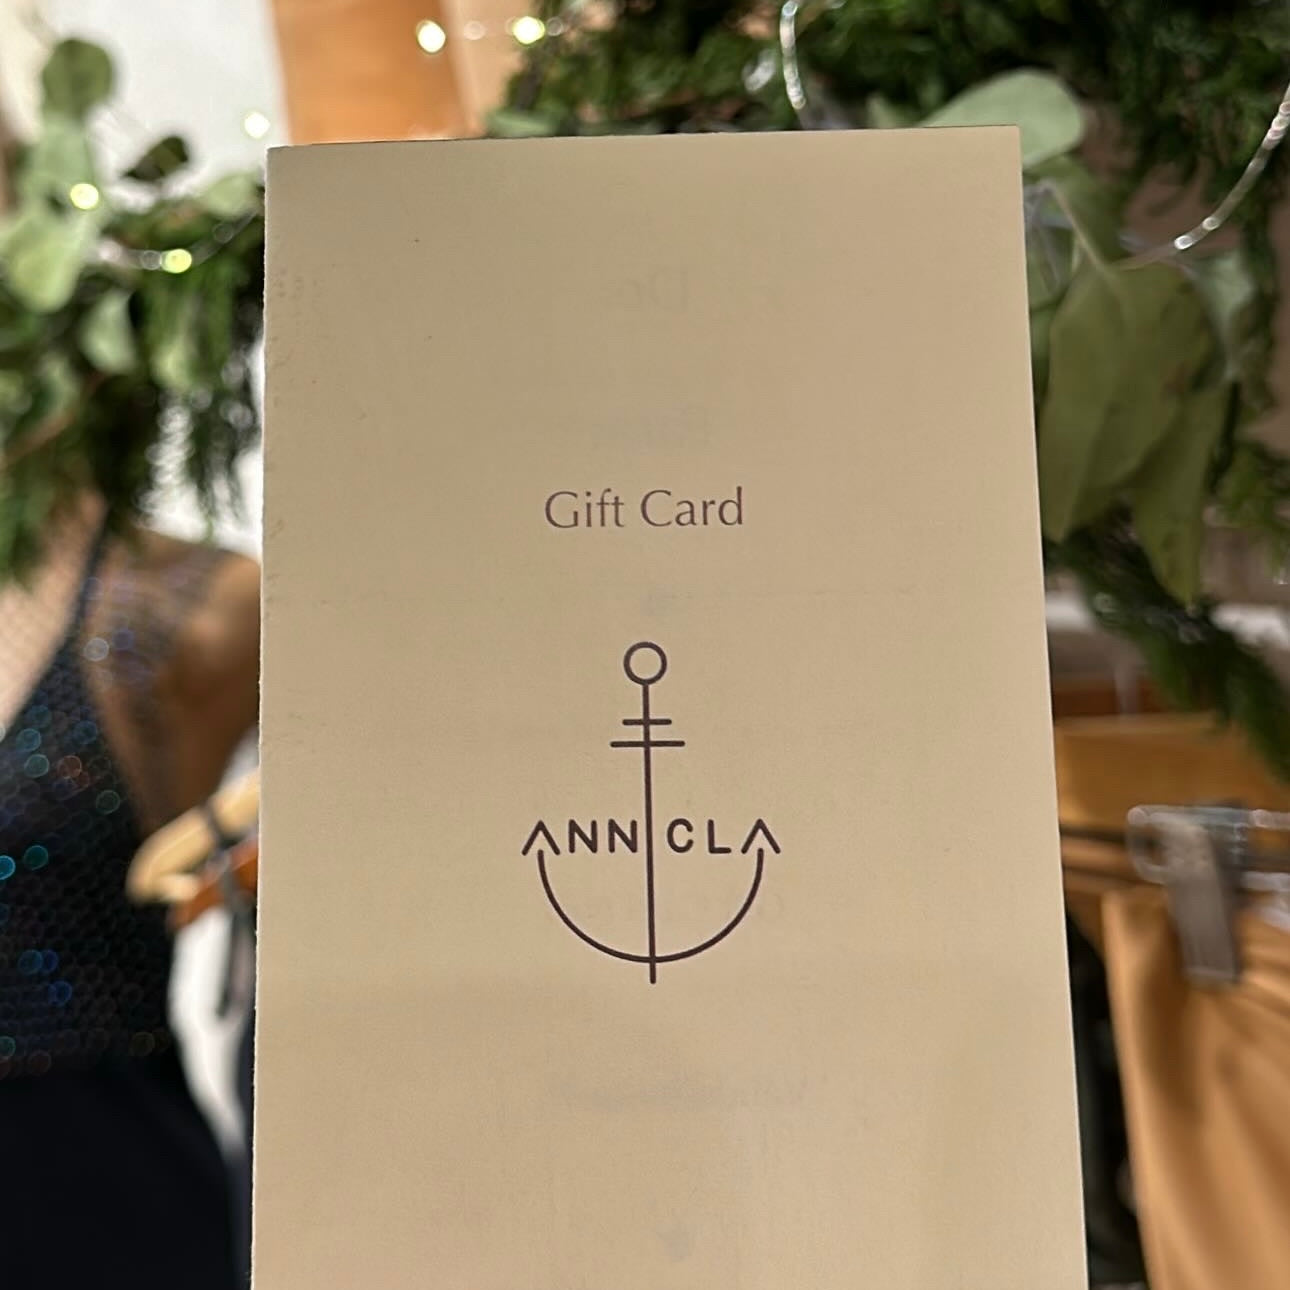 Gift Card - Anncla